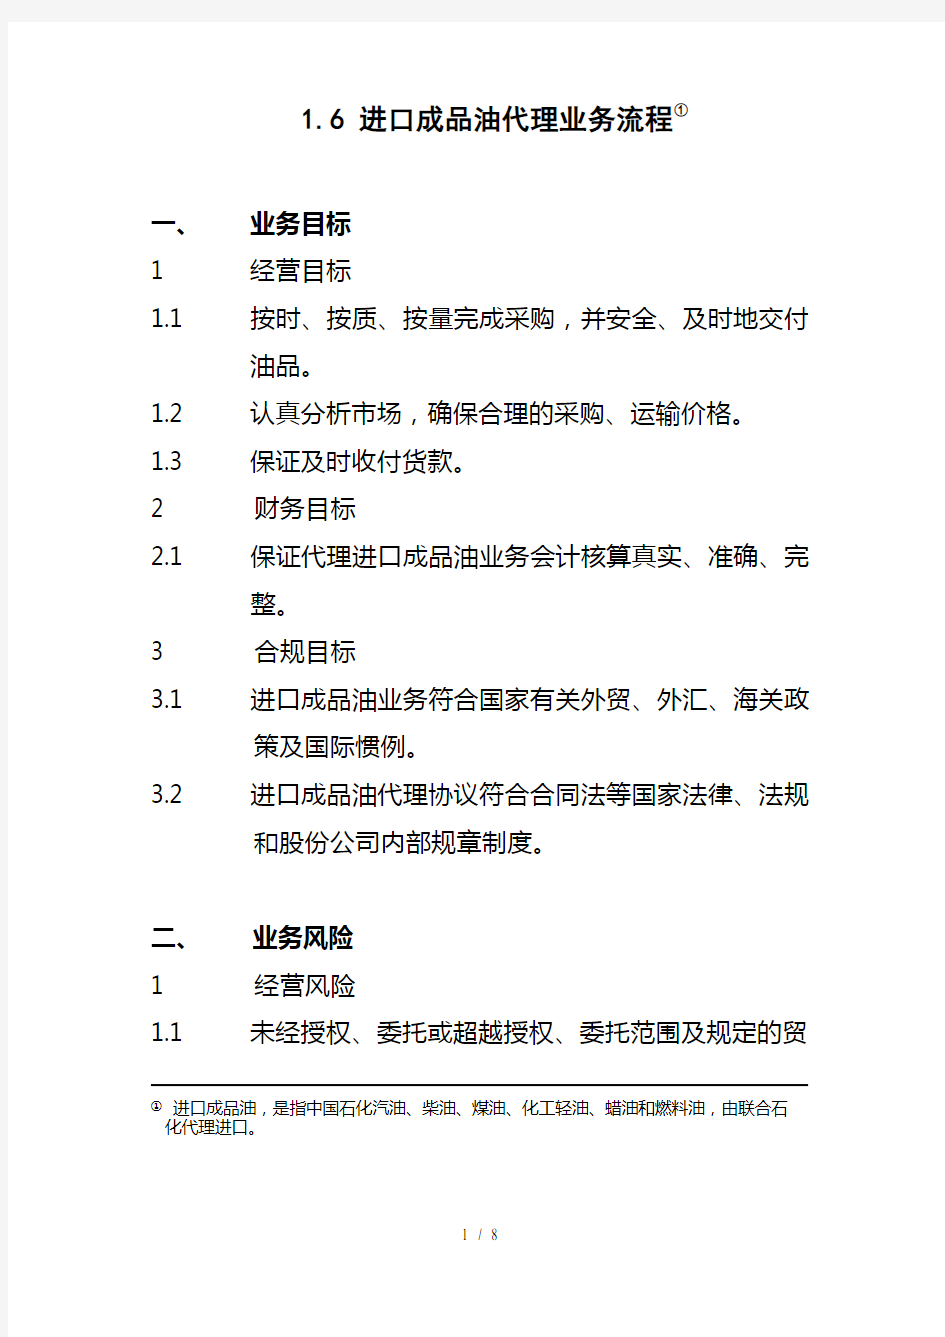 中国石化公司内部控制与业务流程汇总12